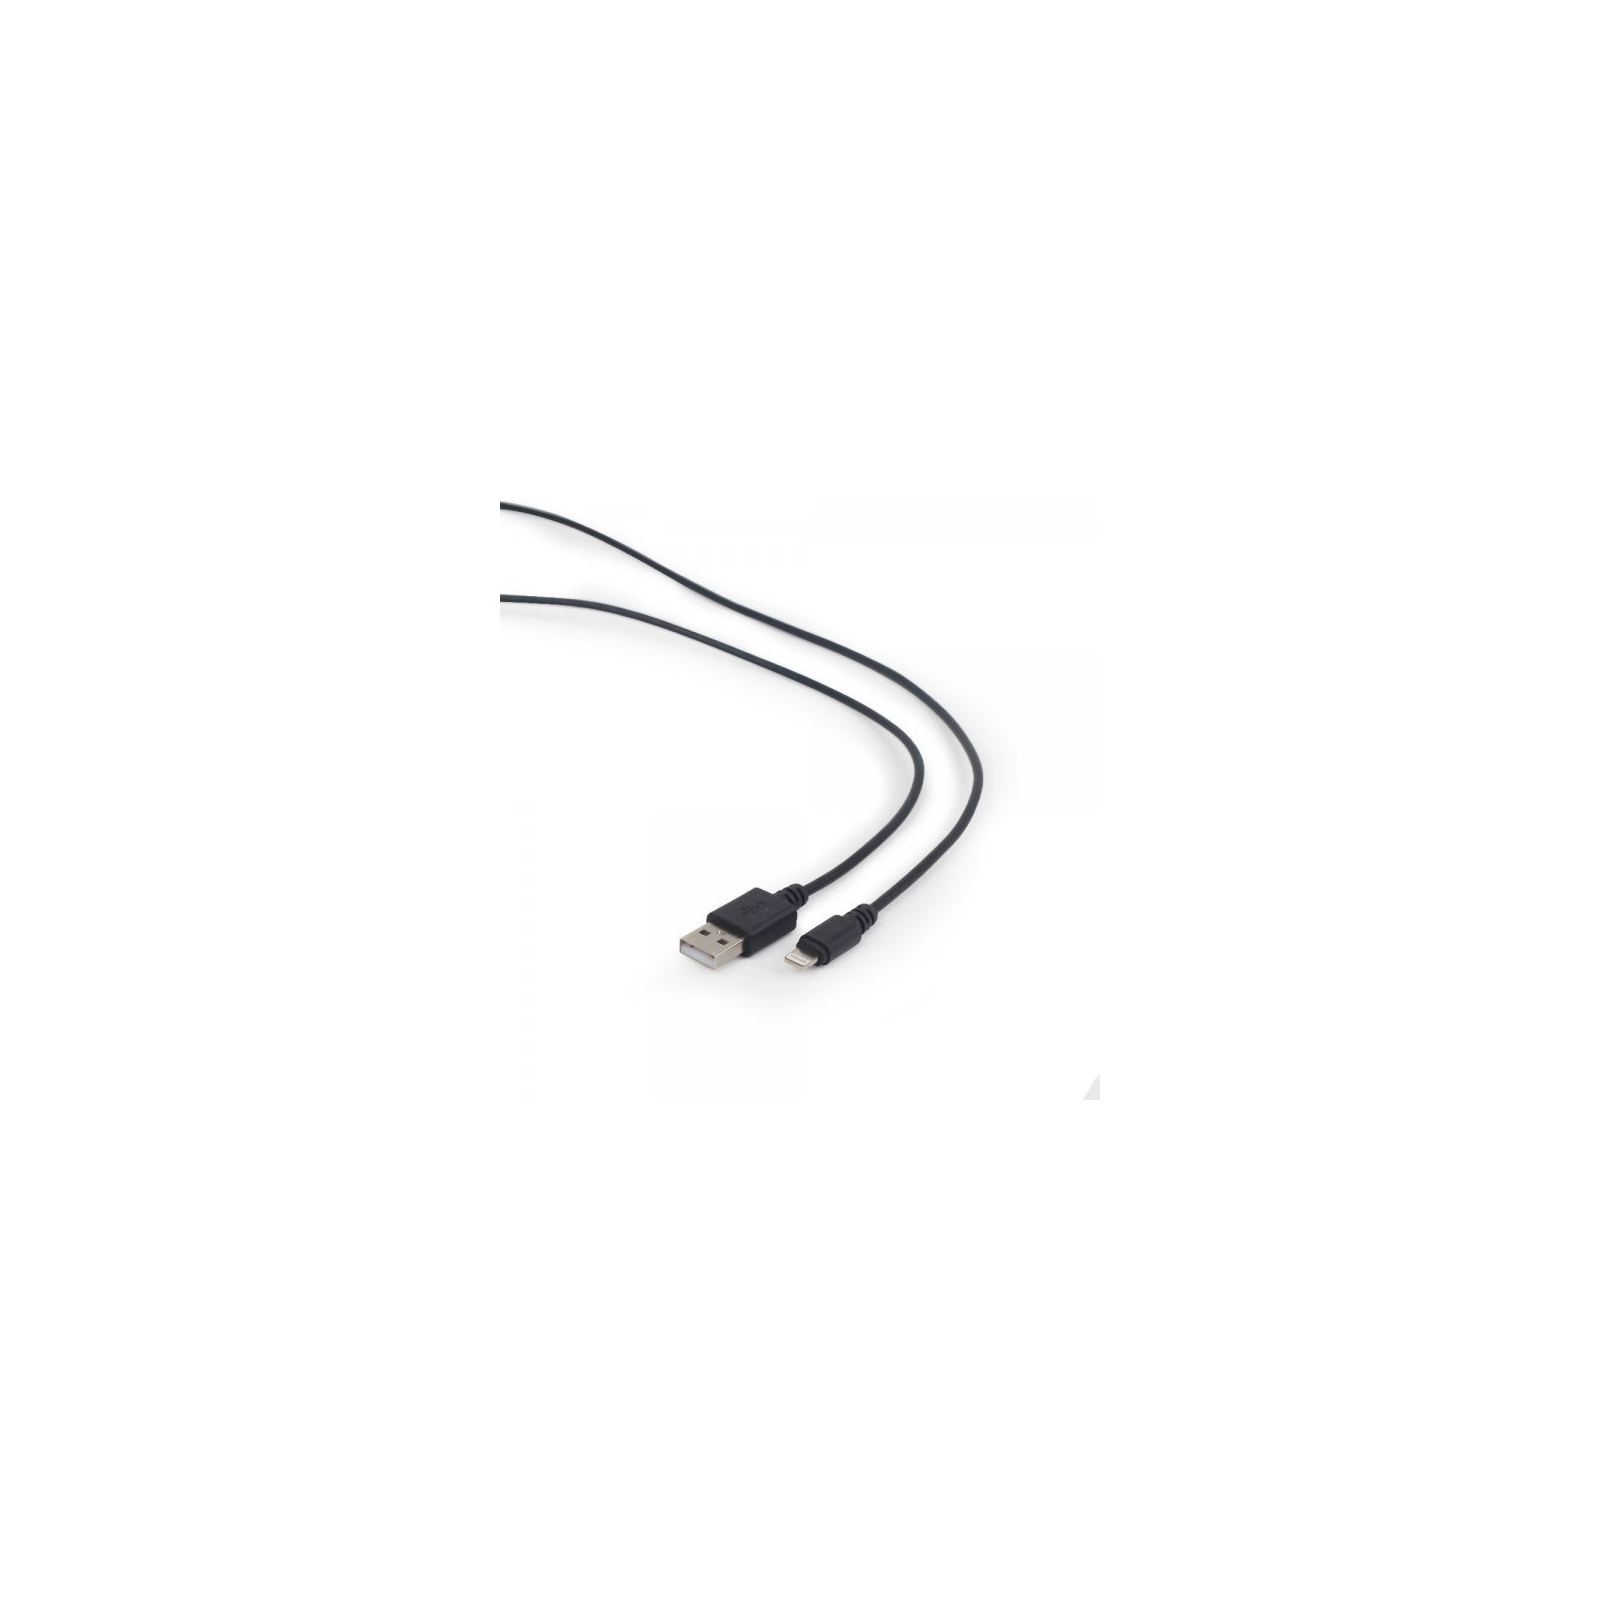 Дата кабель USB 2.0 AM to Lightning 2.0m Cablexpert (CC-USB2-AMLM-2M) зображення 2